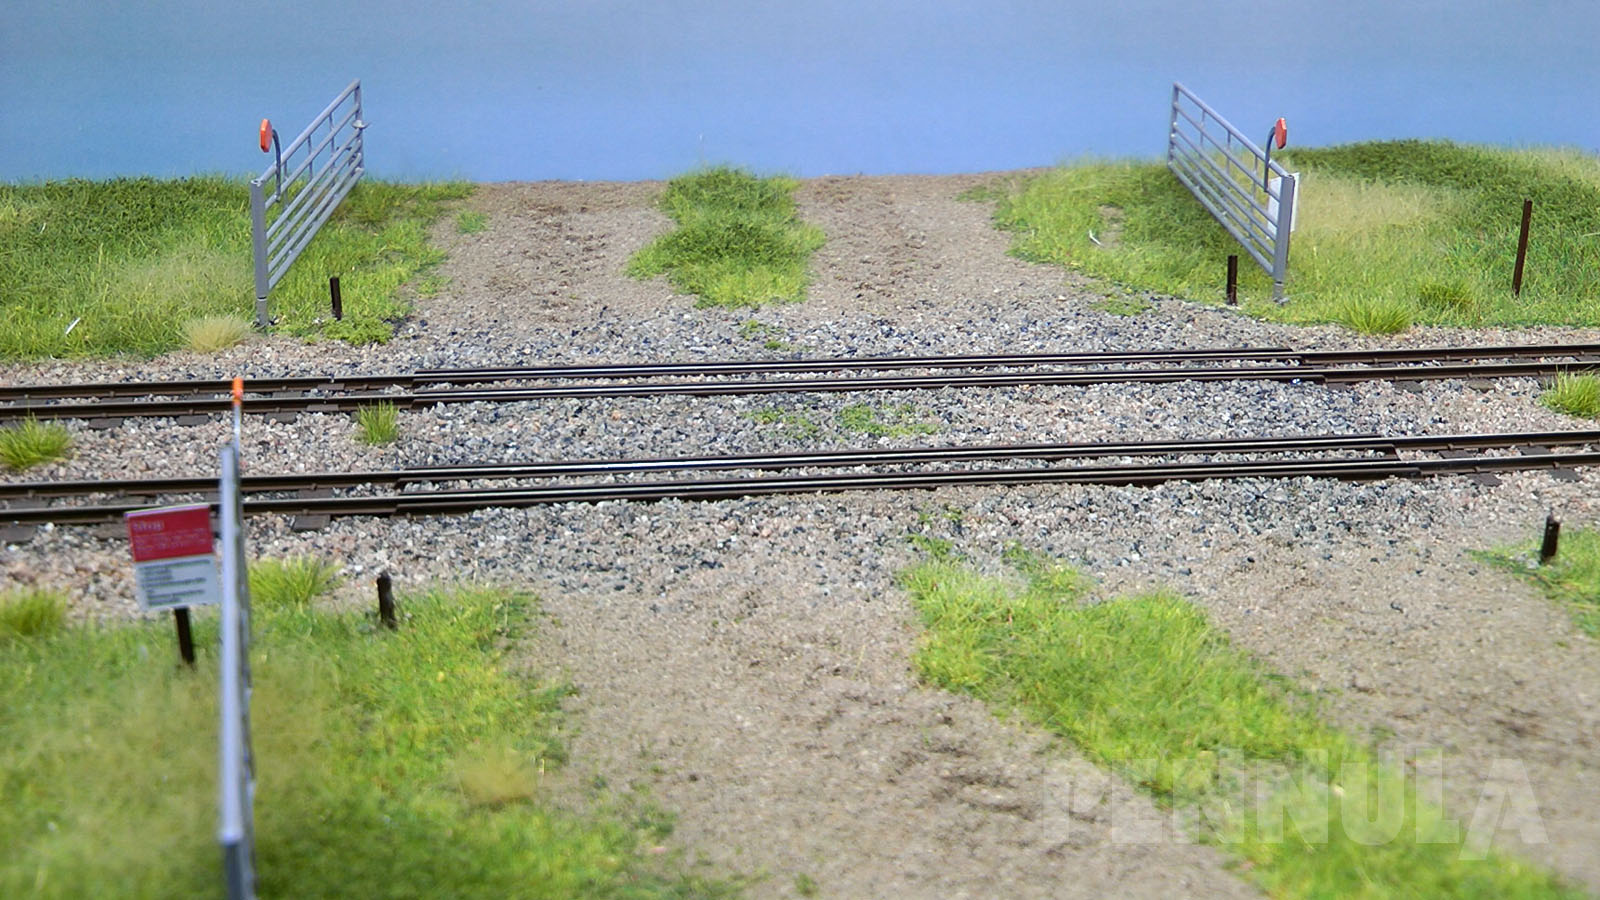 Die Modellbahnanlage spiegelt einen originalen Streckenabschnitt dar und zwar einen Teil der Strecke, der auf zwölf Kilometern Länge zweigleisig ausgebaut ist.